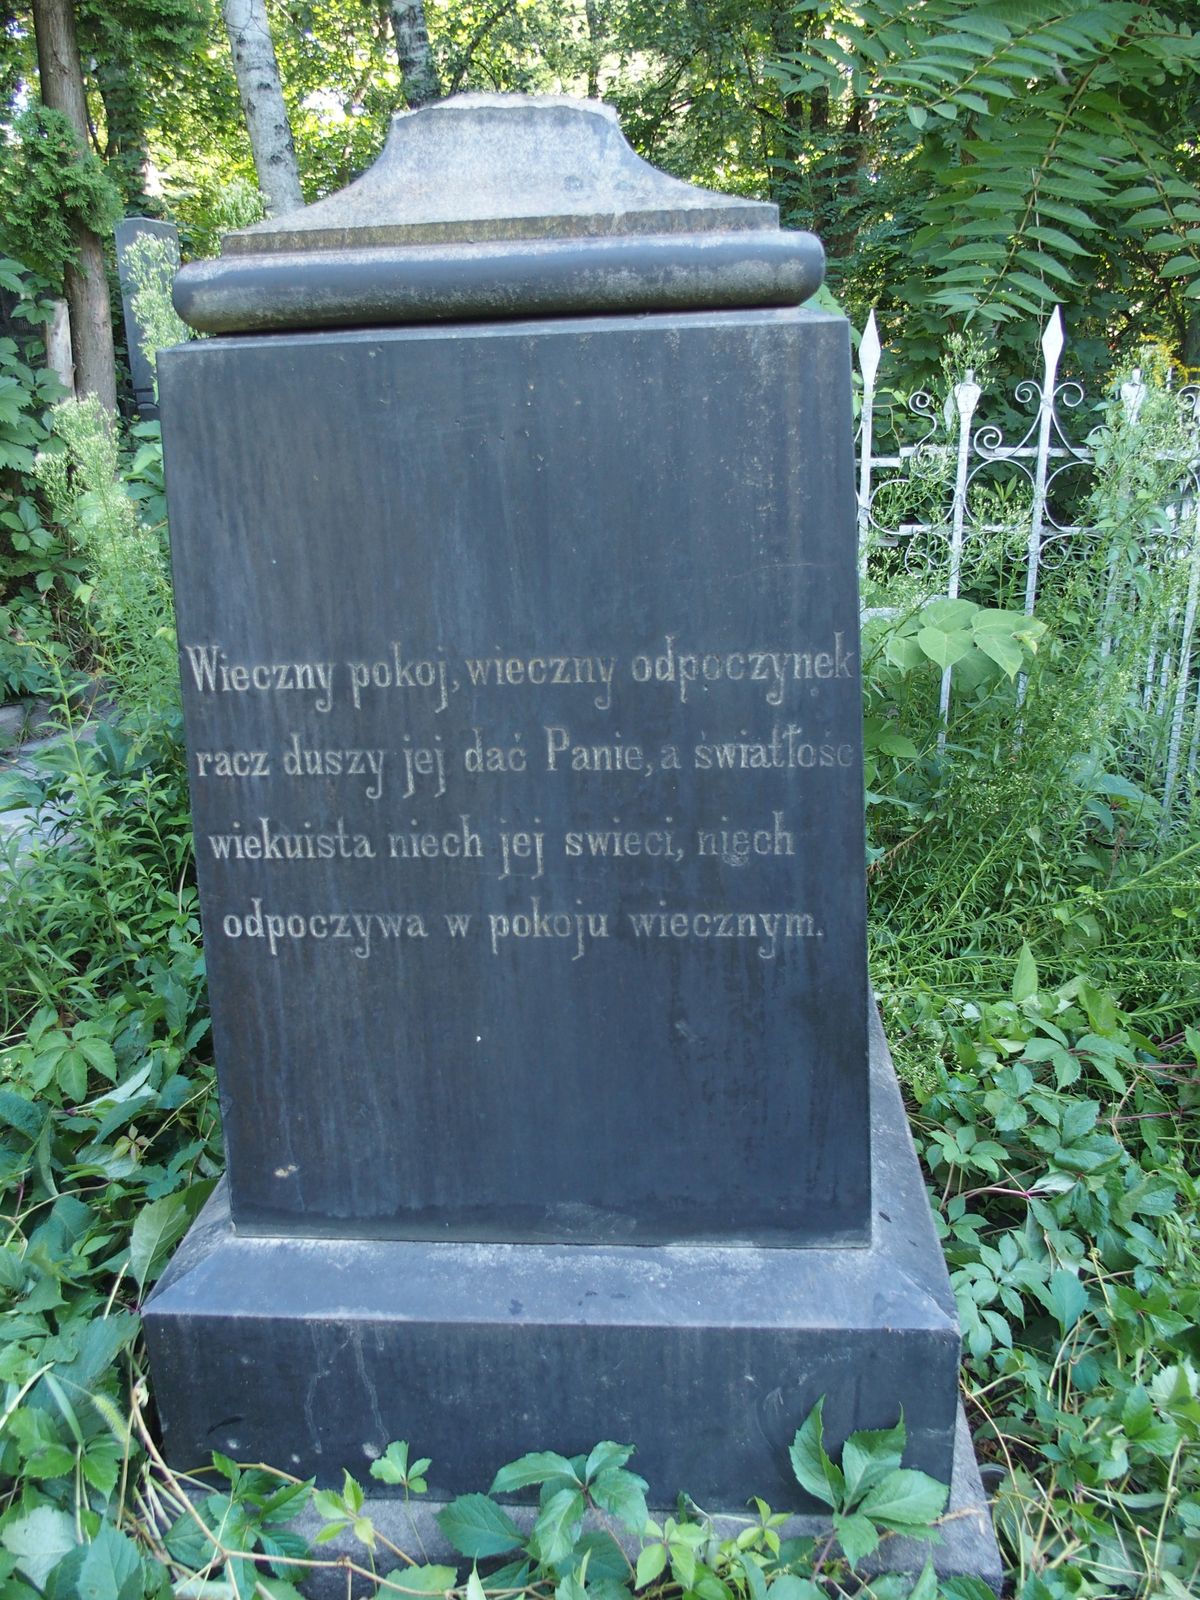 Napis z nagrobka Wiktorii Kruszyńskiej, cmentarz Bajkowa w Kijowie, stan z 2021